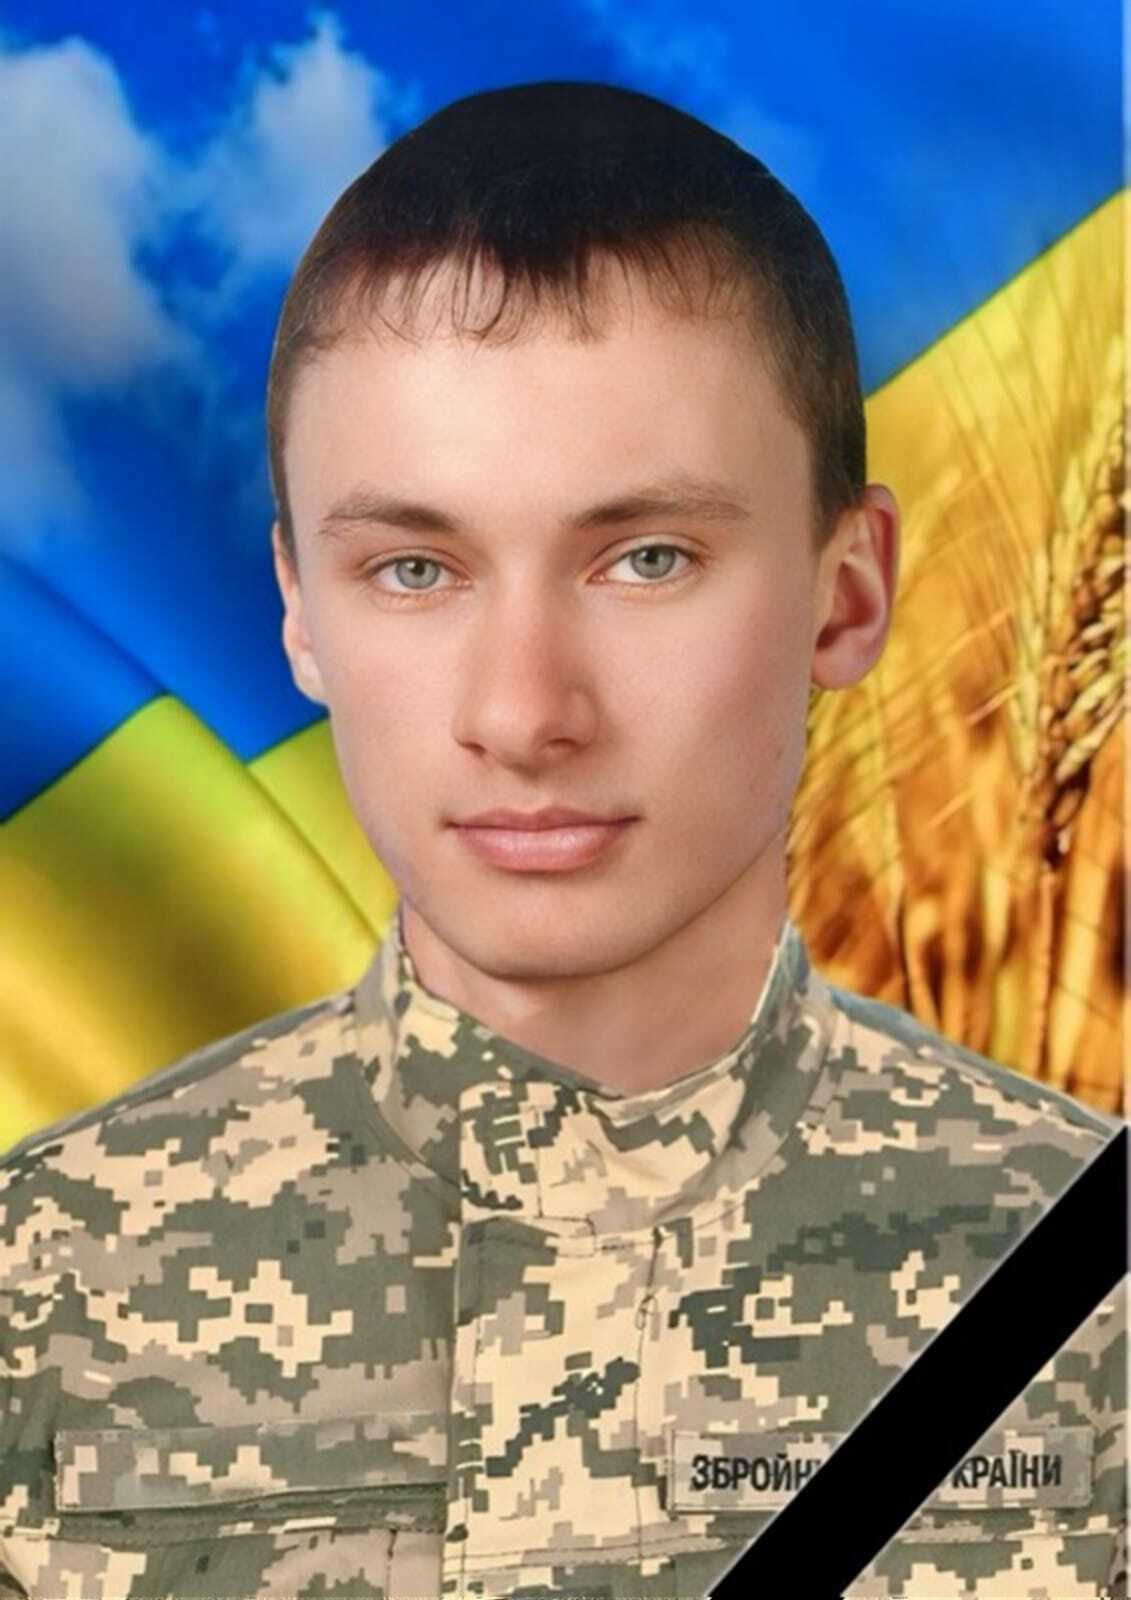 "Єдиний син у родині": у боях за Україну загинув захисник з Хмельниччини. Фото 